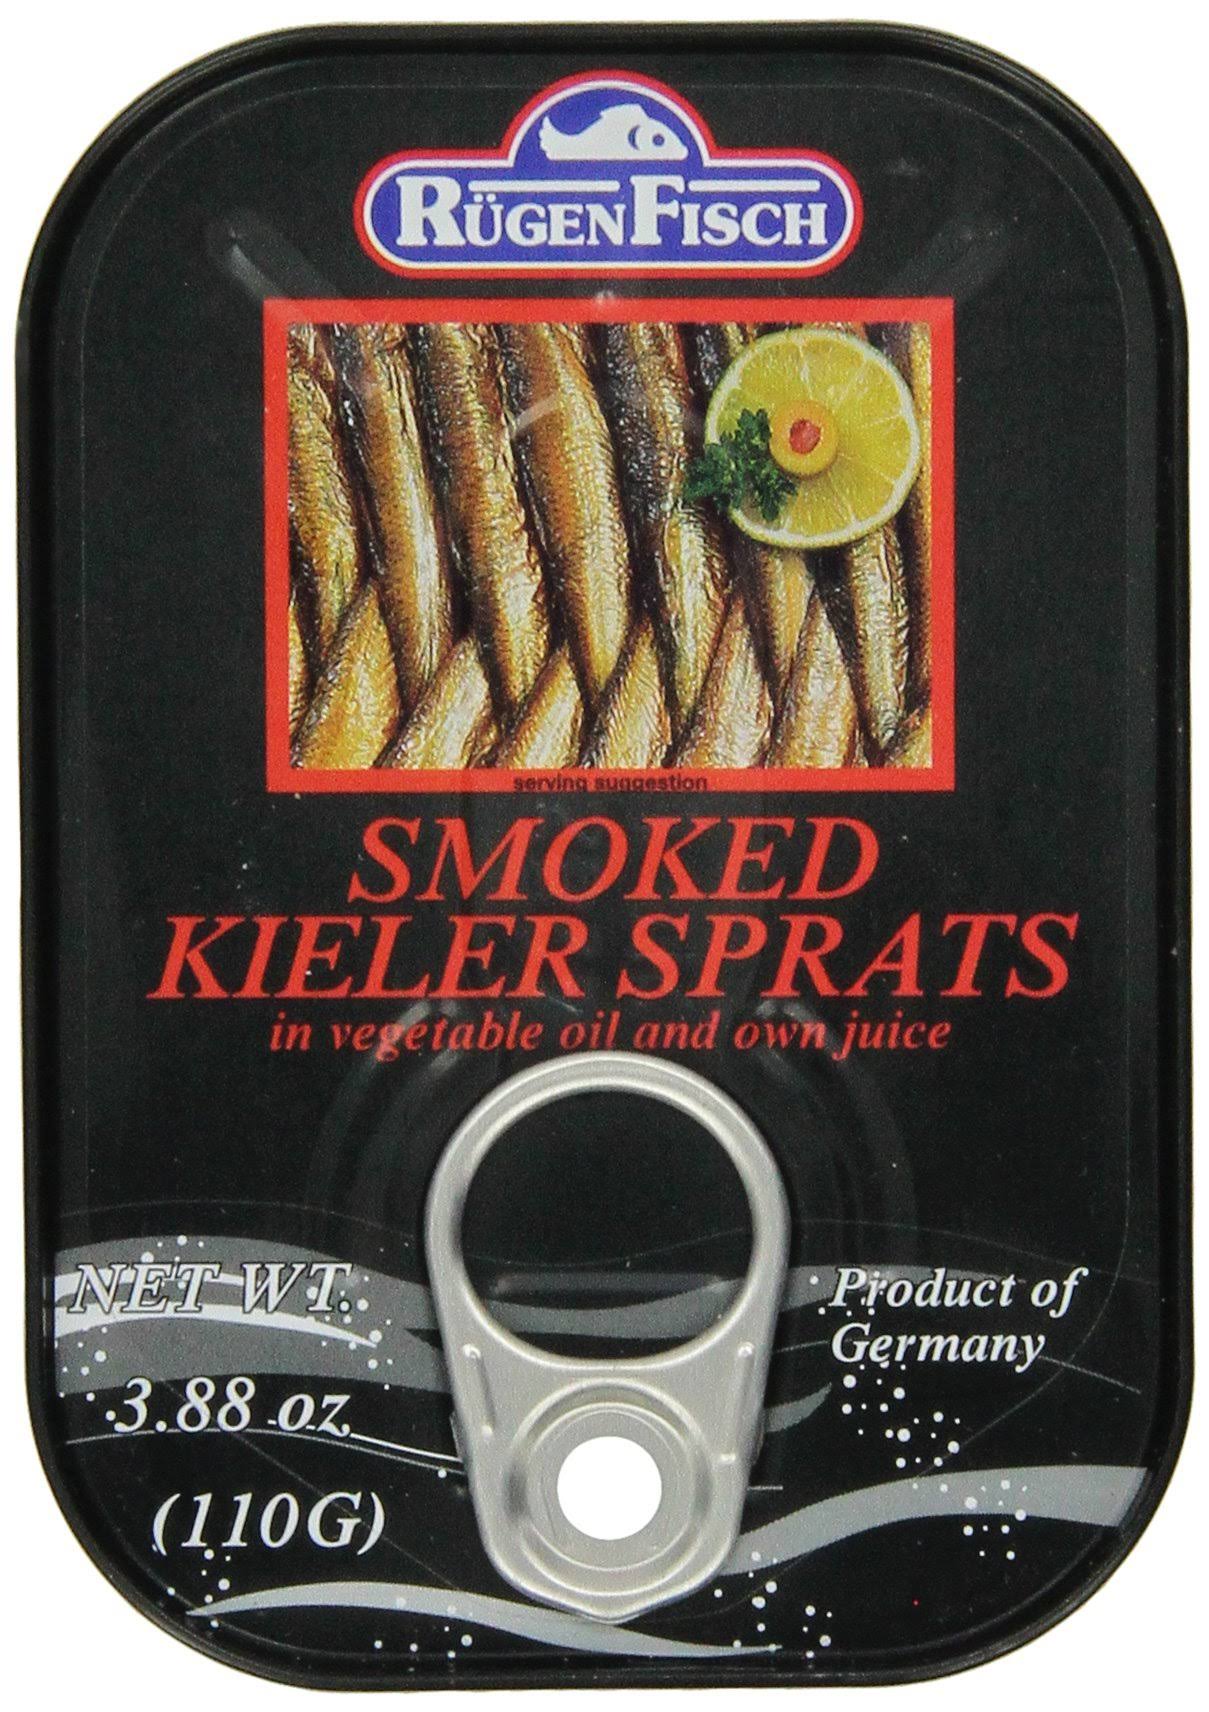 Rugen Fisch Smoked Kieler Sprats - 110g